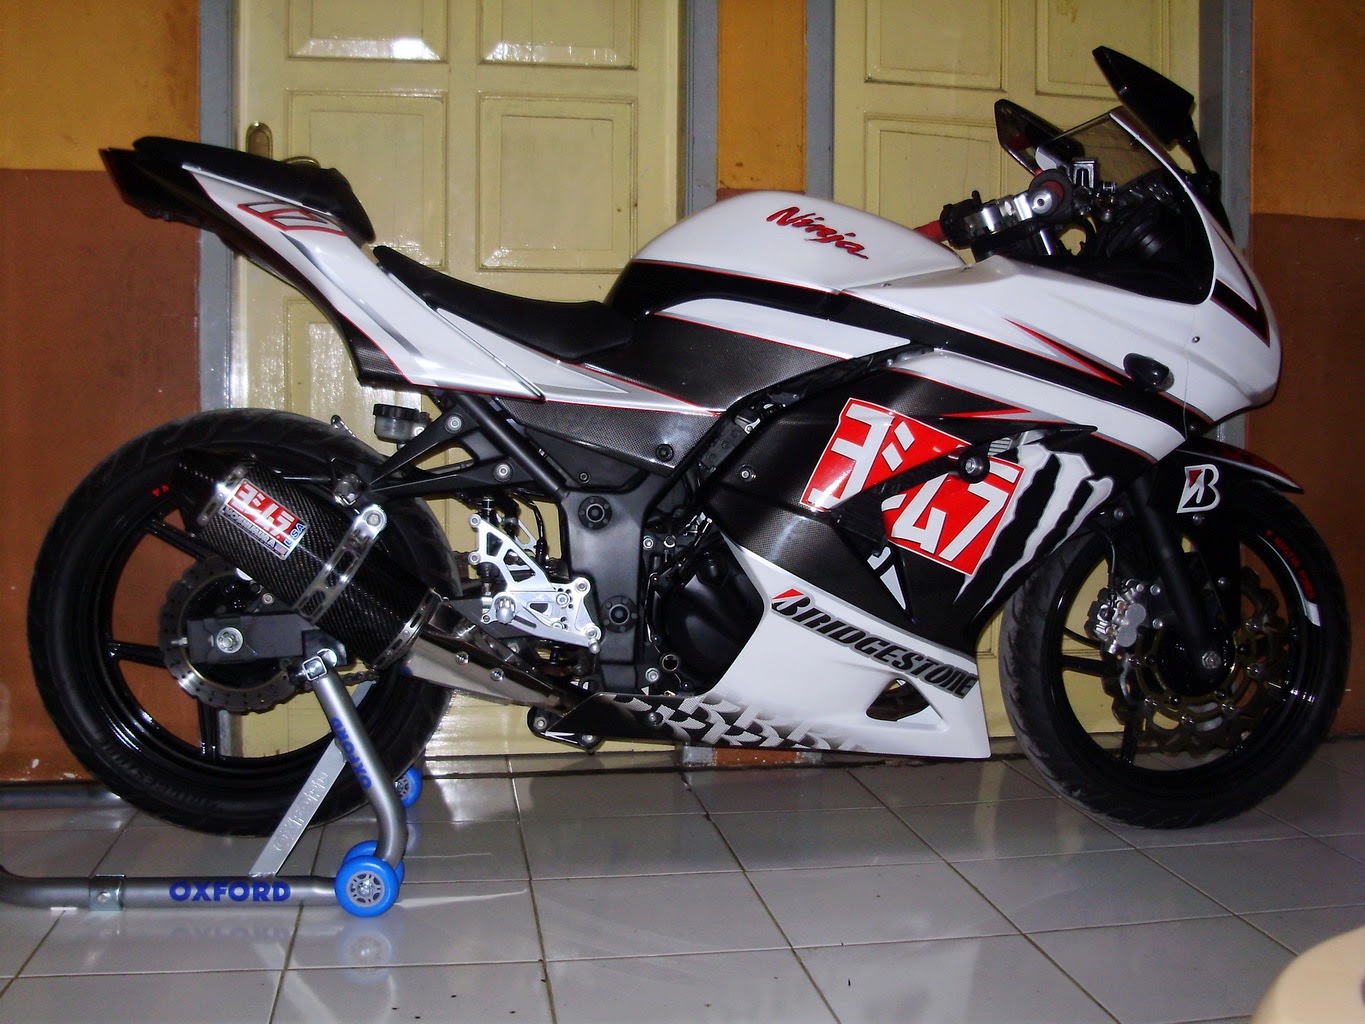 Koleksi Foto Modifikasi Motor Kawasaki Ninja 150 Rr Terlengkap